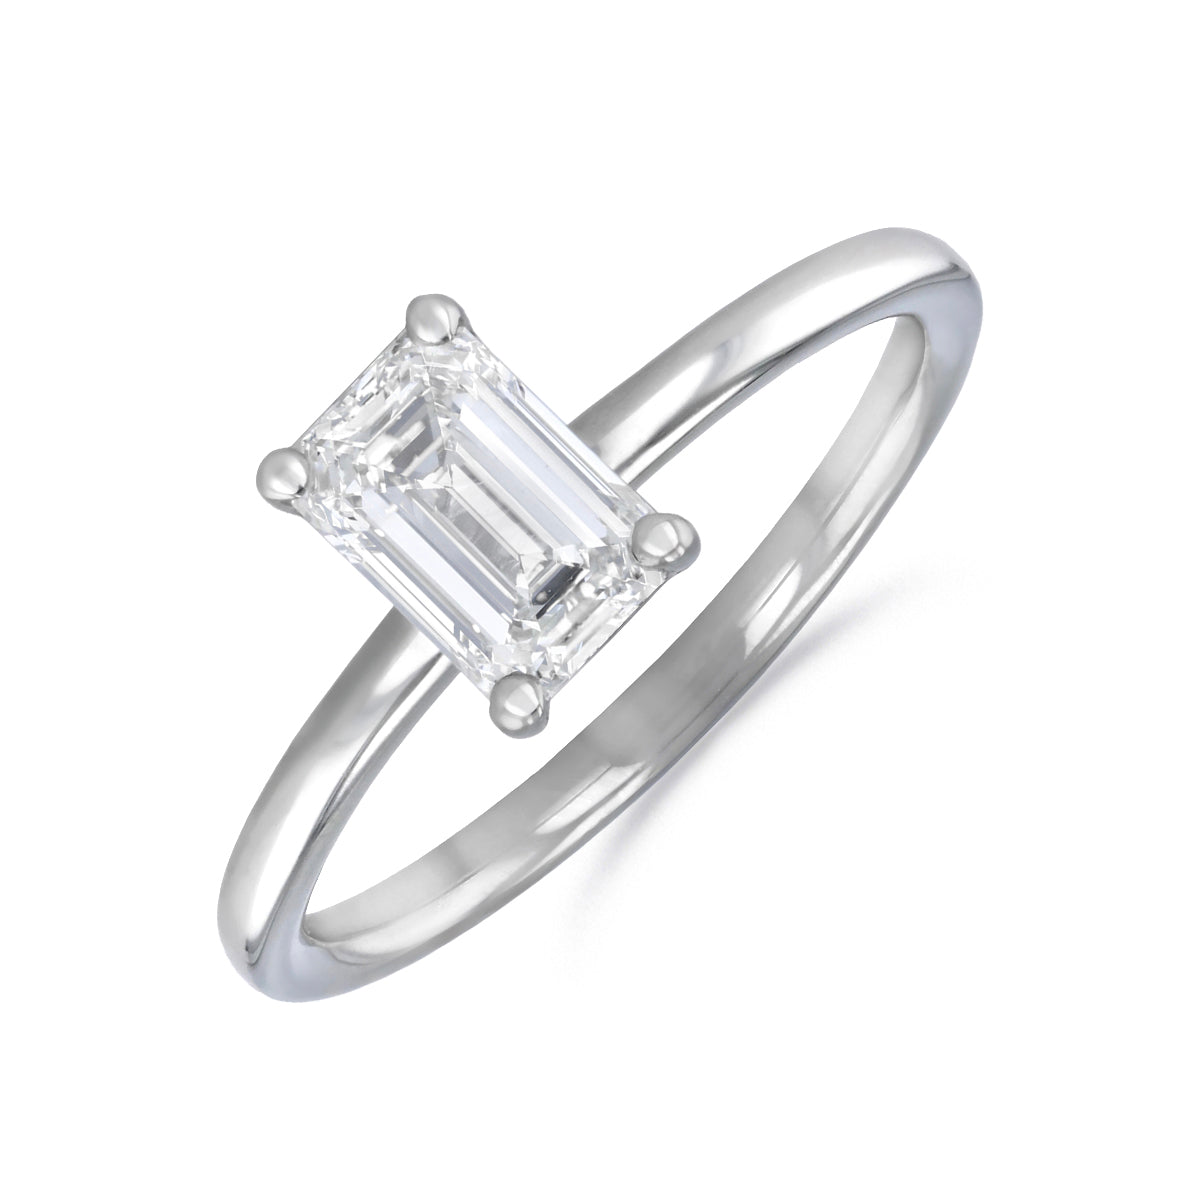 1-20ct-sofia-emerald-cut-solitaire-diamond-engagement-ring-platinum